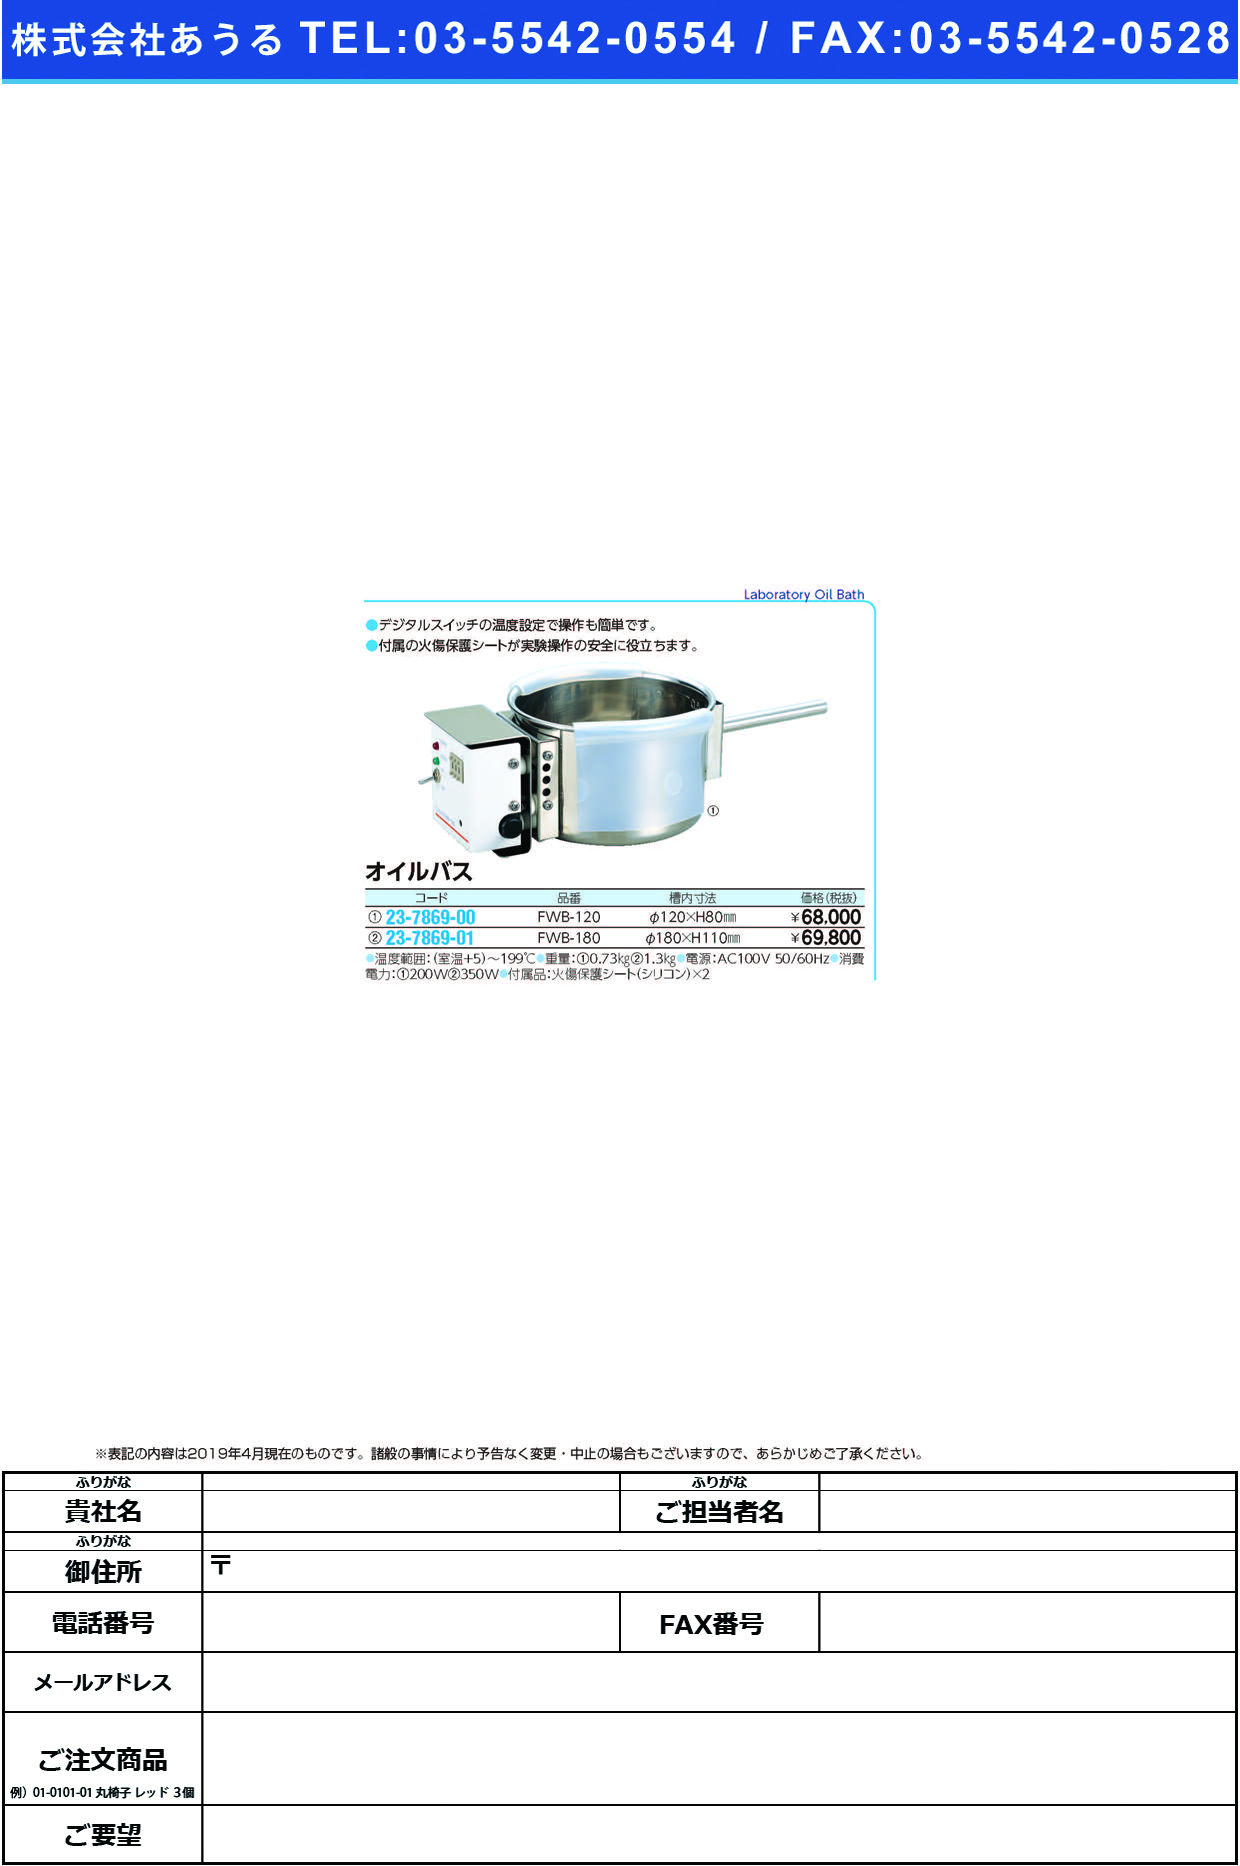 (23-7869-00)オイルバス FWB-120(ｹｲ120XH80MM) ｵｲﾙﾊﾞｽ【1台単位】【2019年カタログ商品】